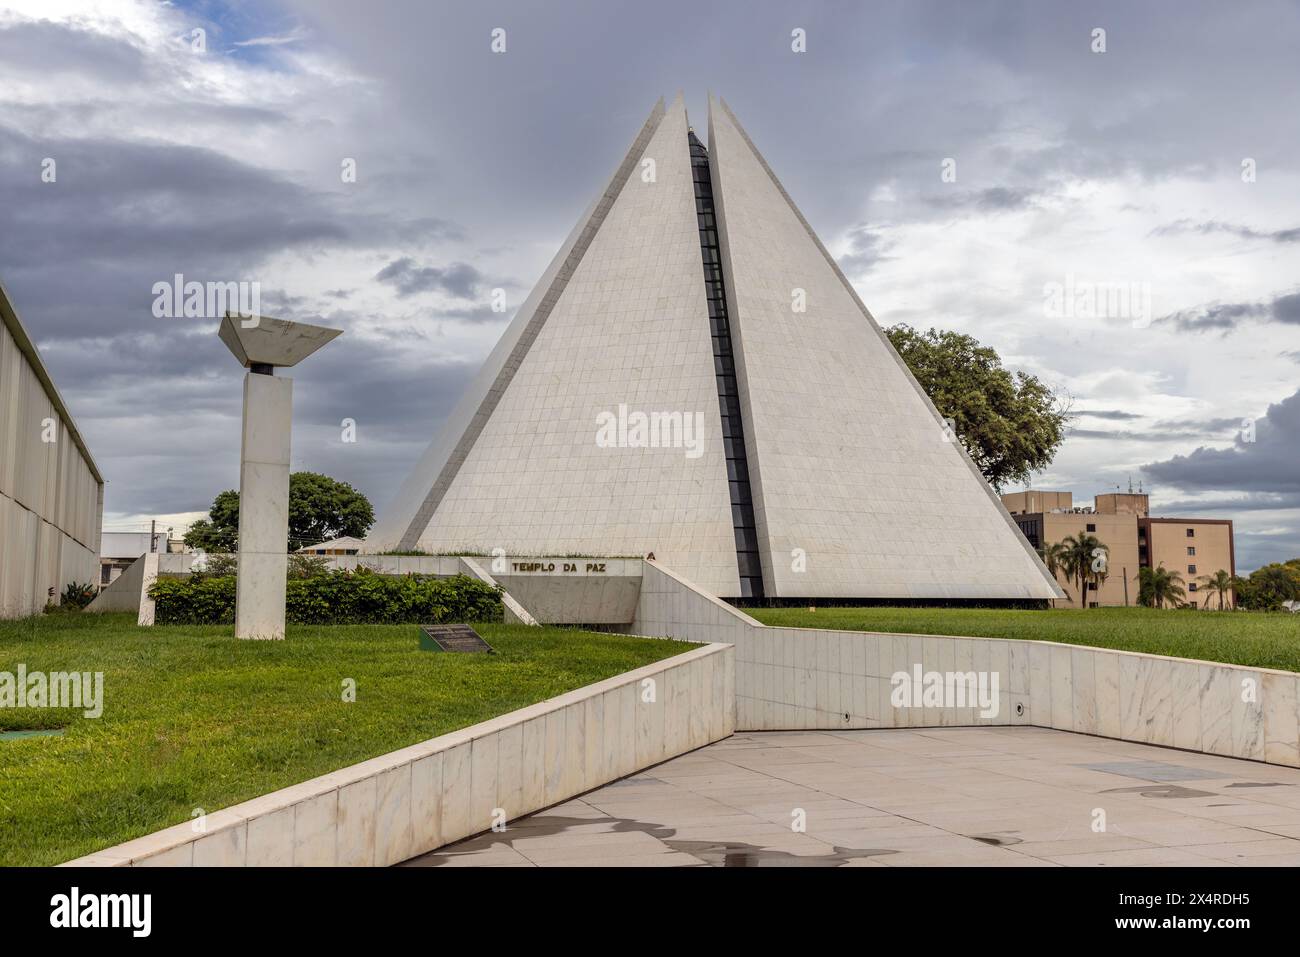 Temple de la bonne volonté pyramide à sept côtés, Templo da Boa Vontade, Brasilia, Brésil Banque D'Images